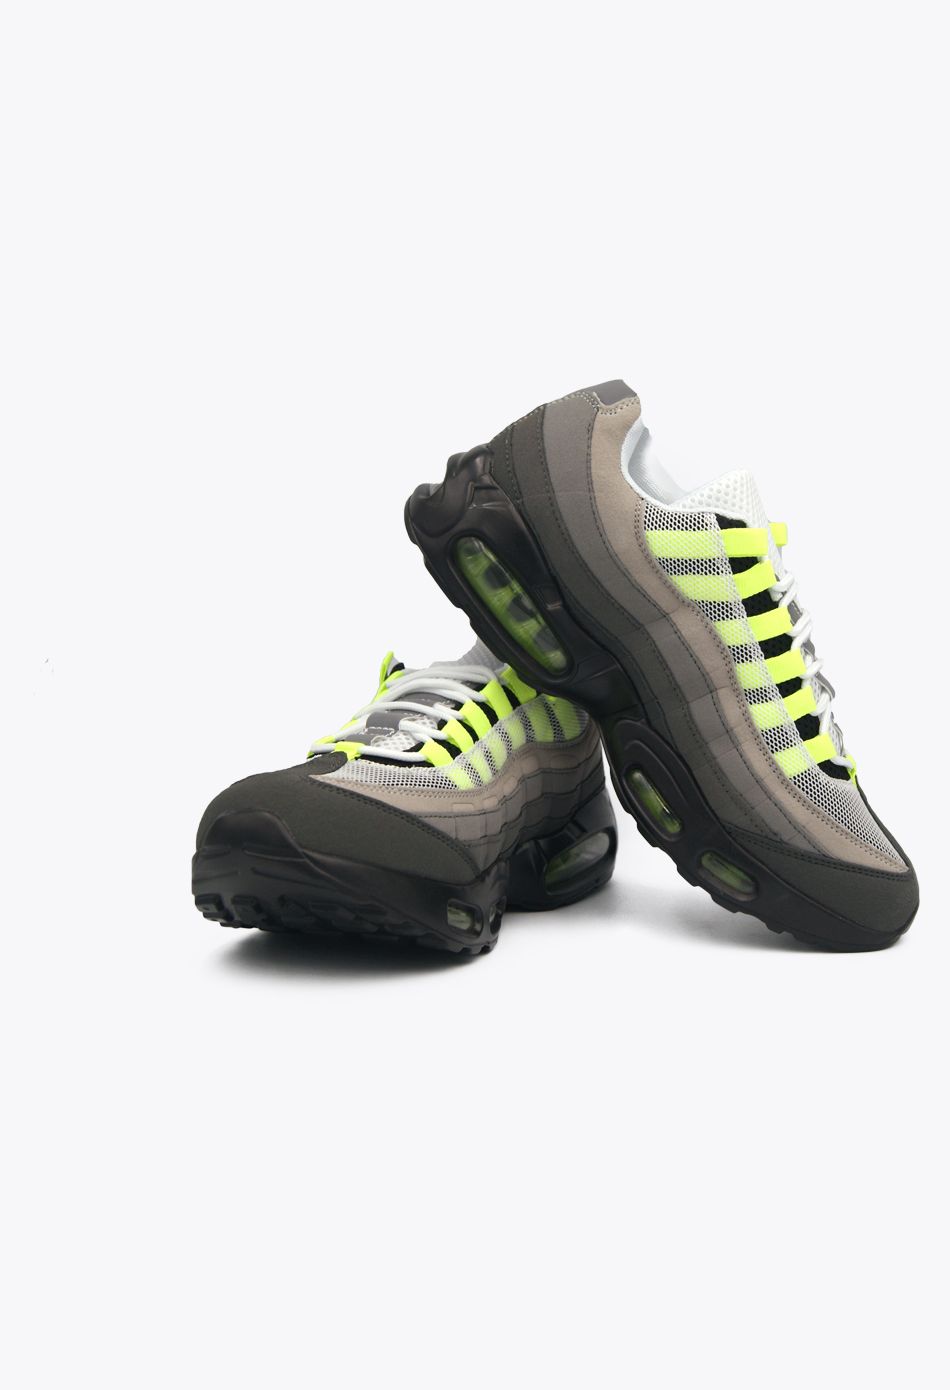 Ανδρικά Αθλητικά Παπούτσια για Τρέξιμο με αεροσόλα Γρι / M-95-grey/green ΑΘΛΗΤΙΚΑ & SNEAKERS joya.gr